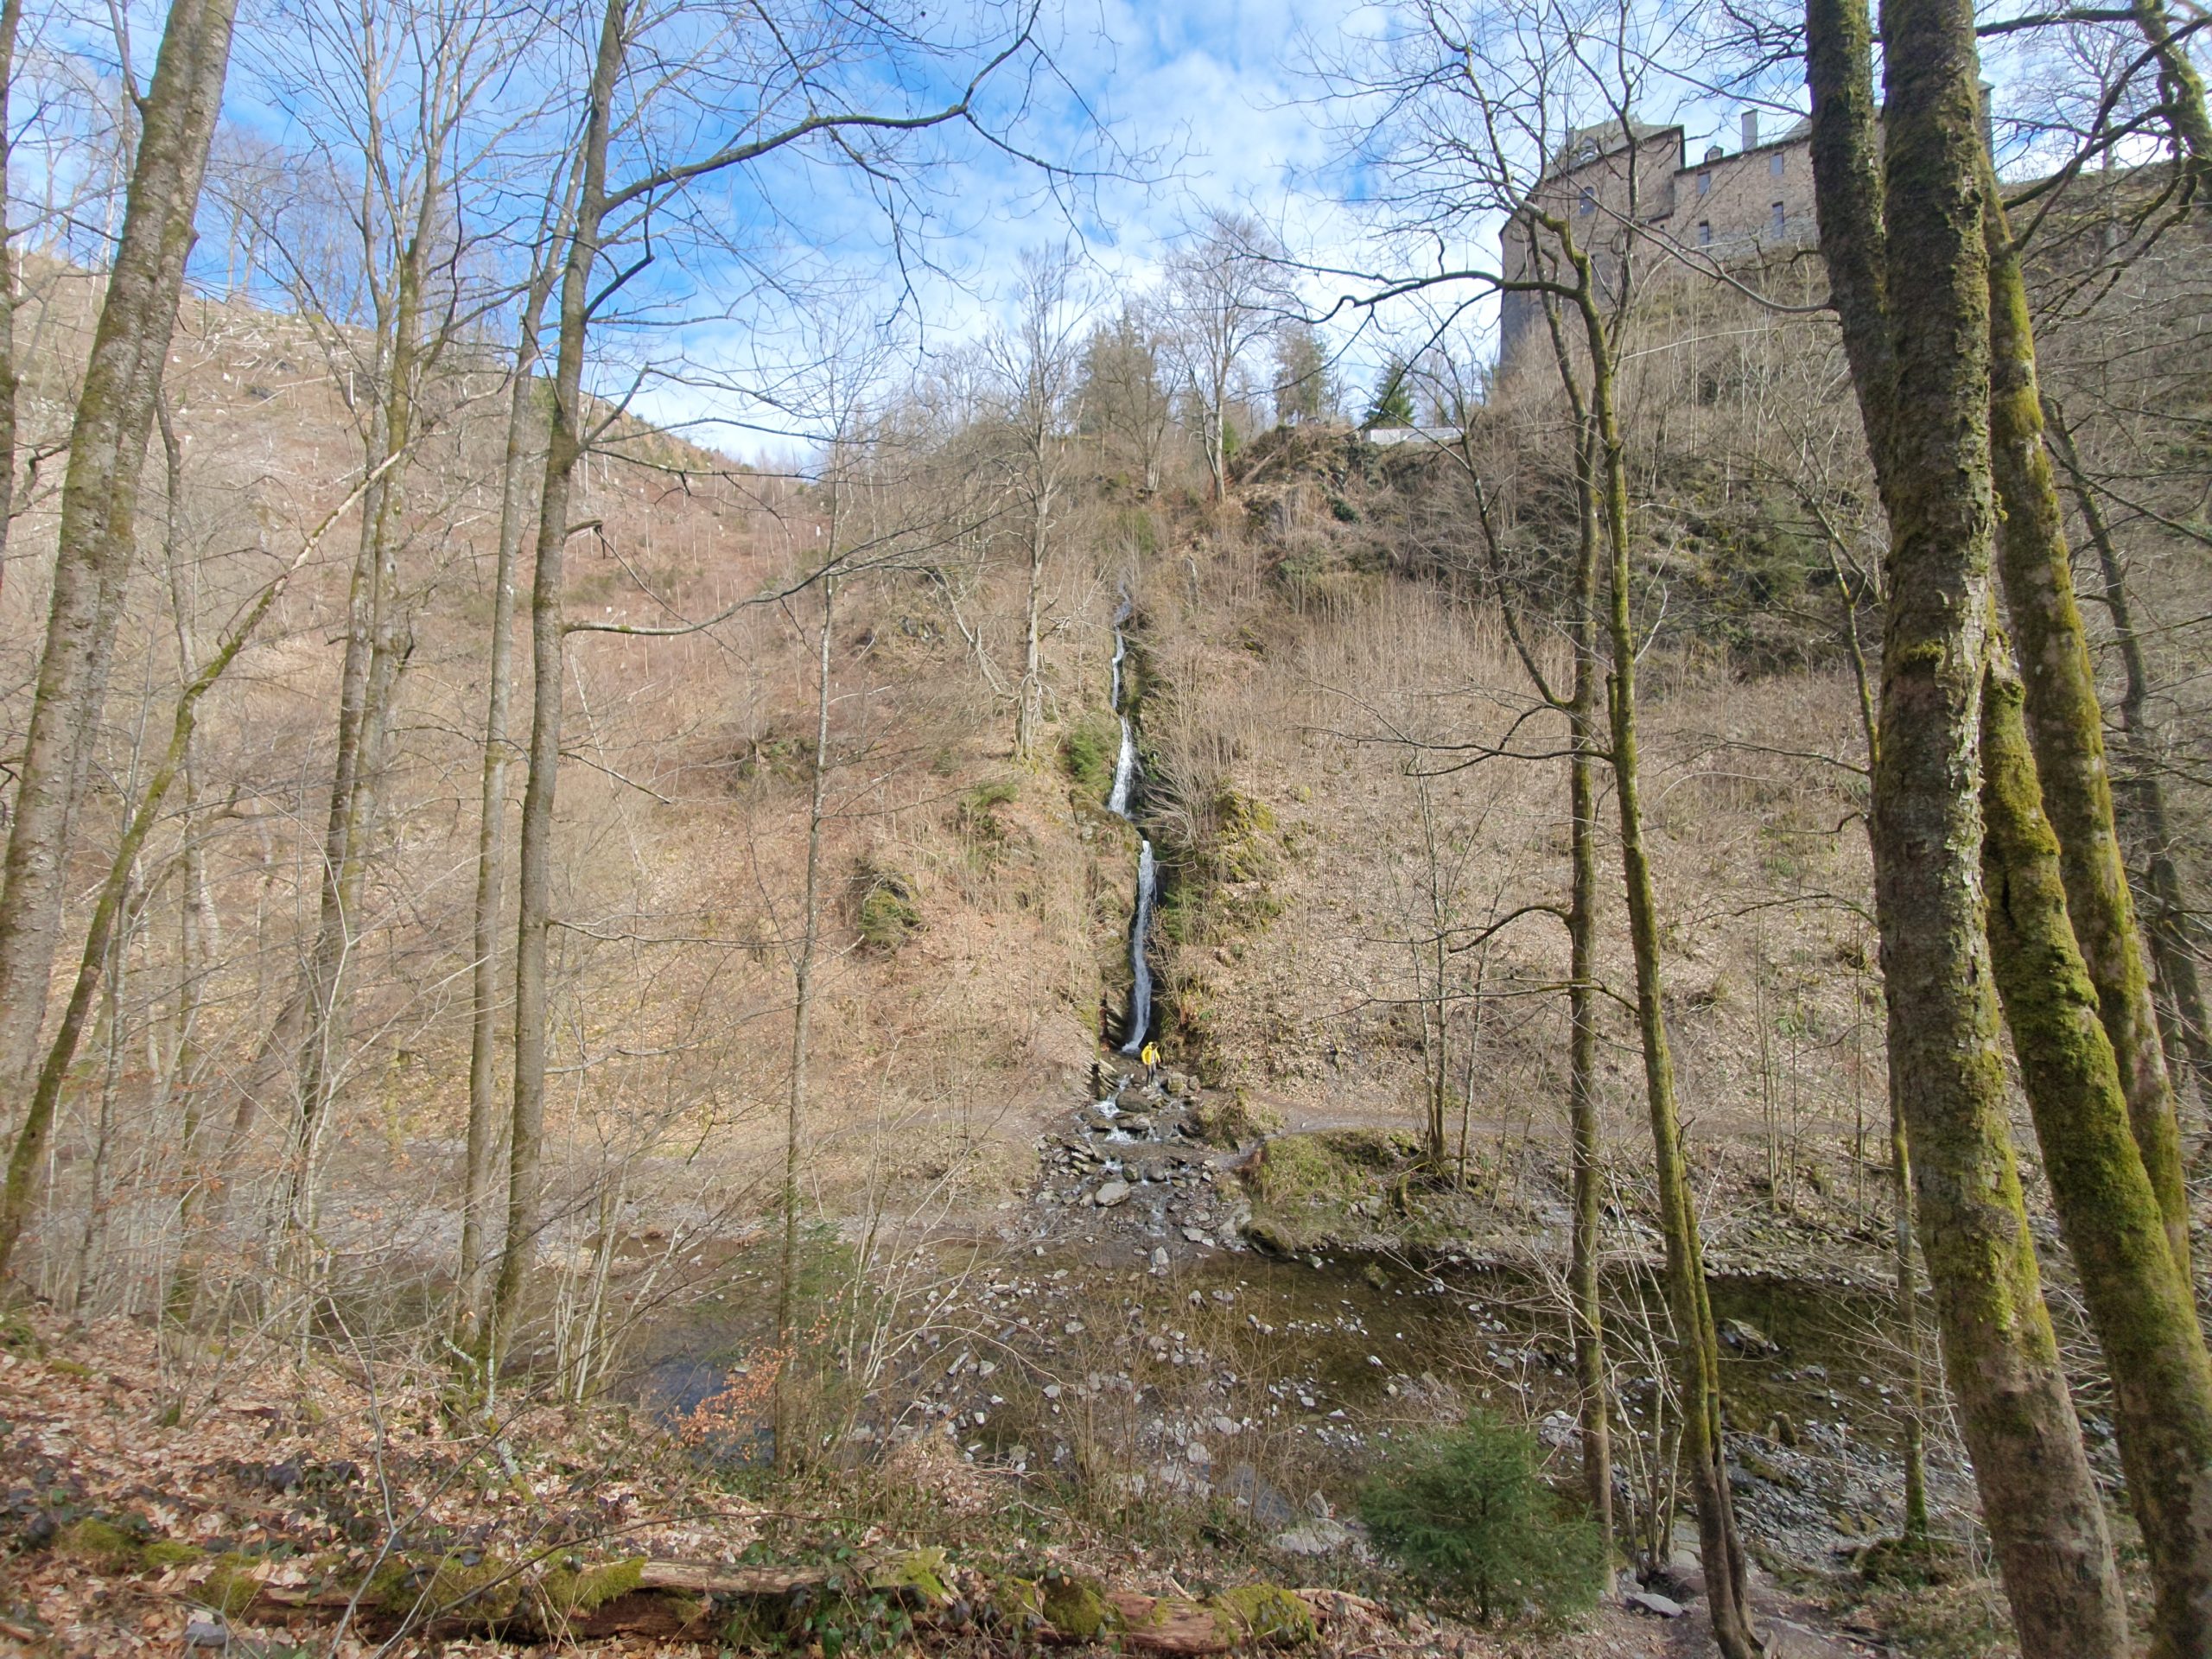 Cascade de Reinhardstein - Endroit insolite à Waimes, en Belgique